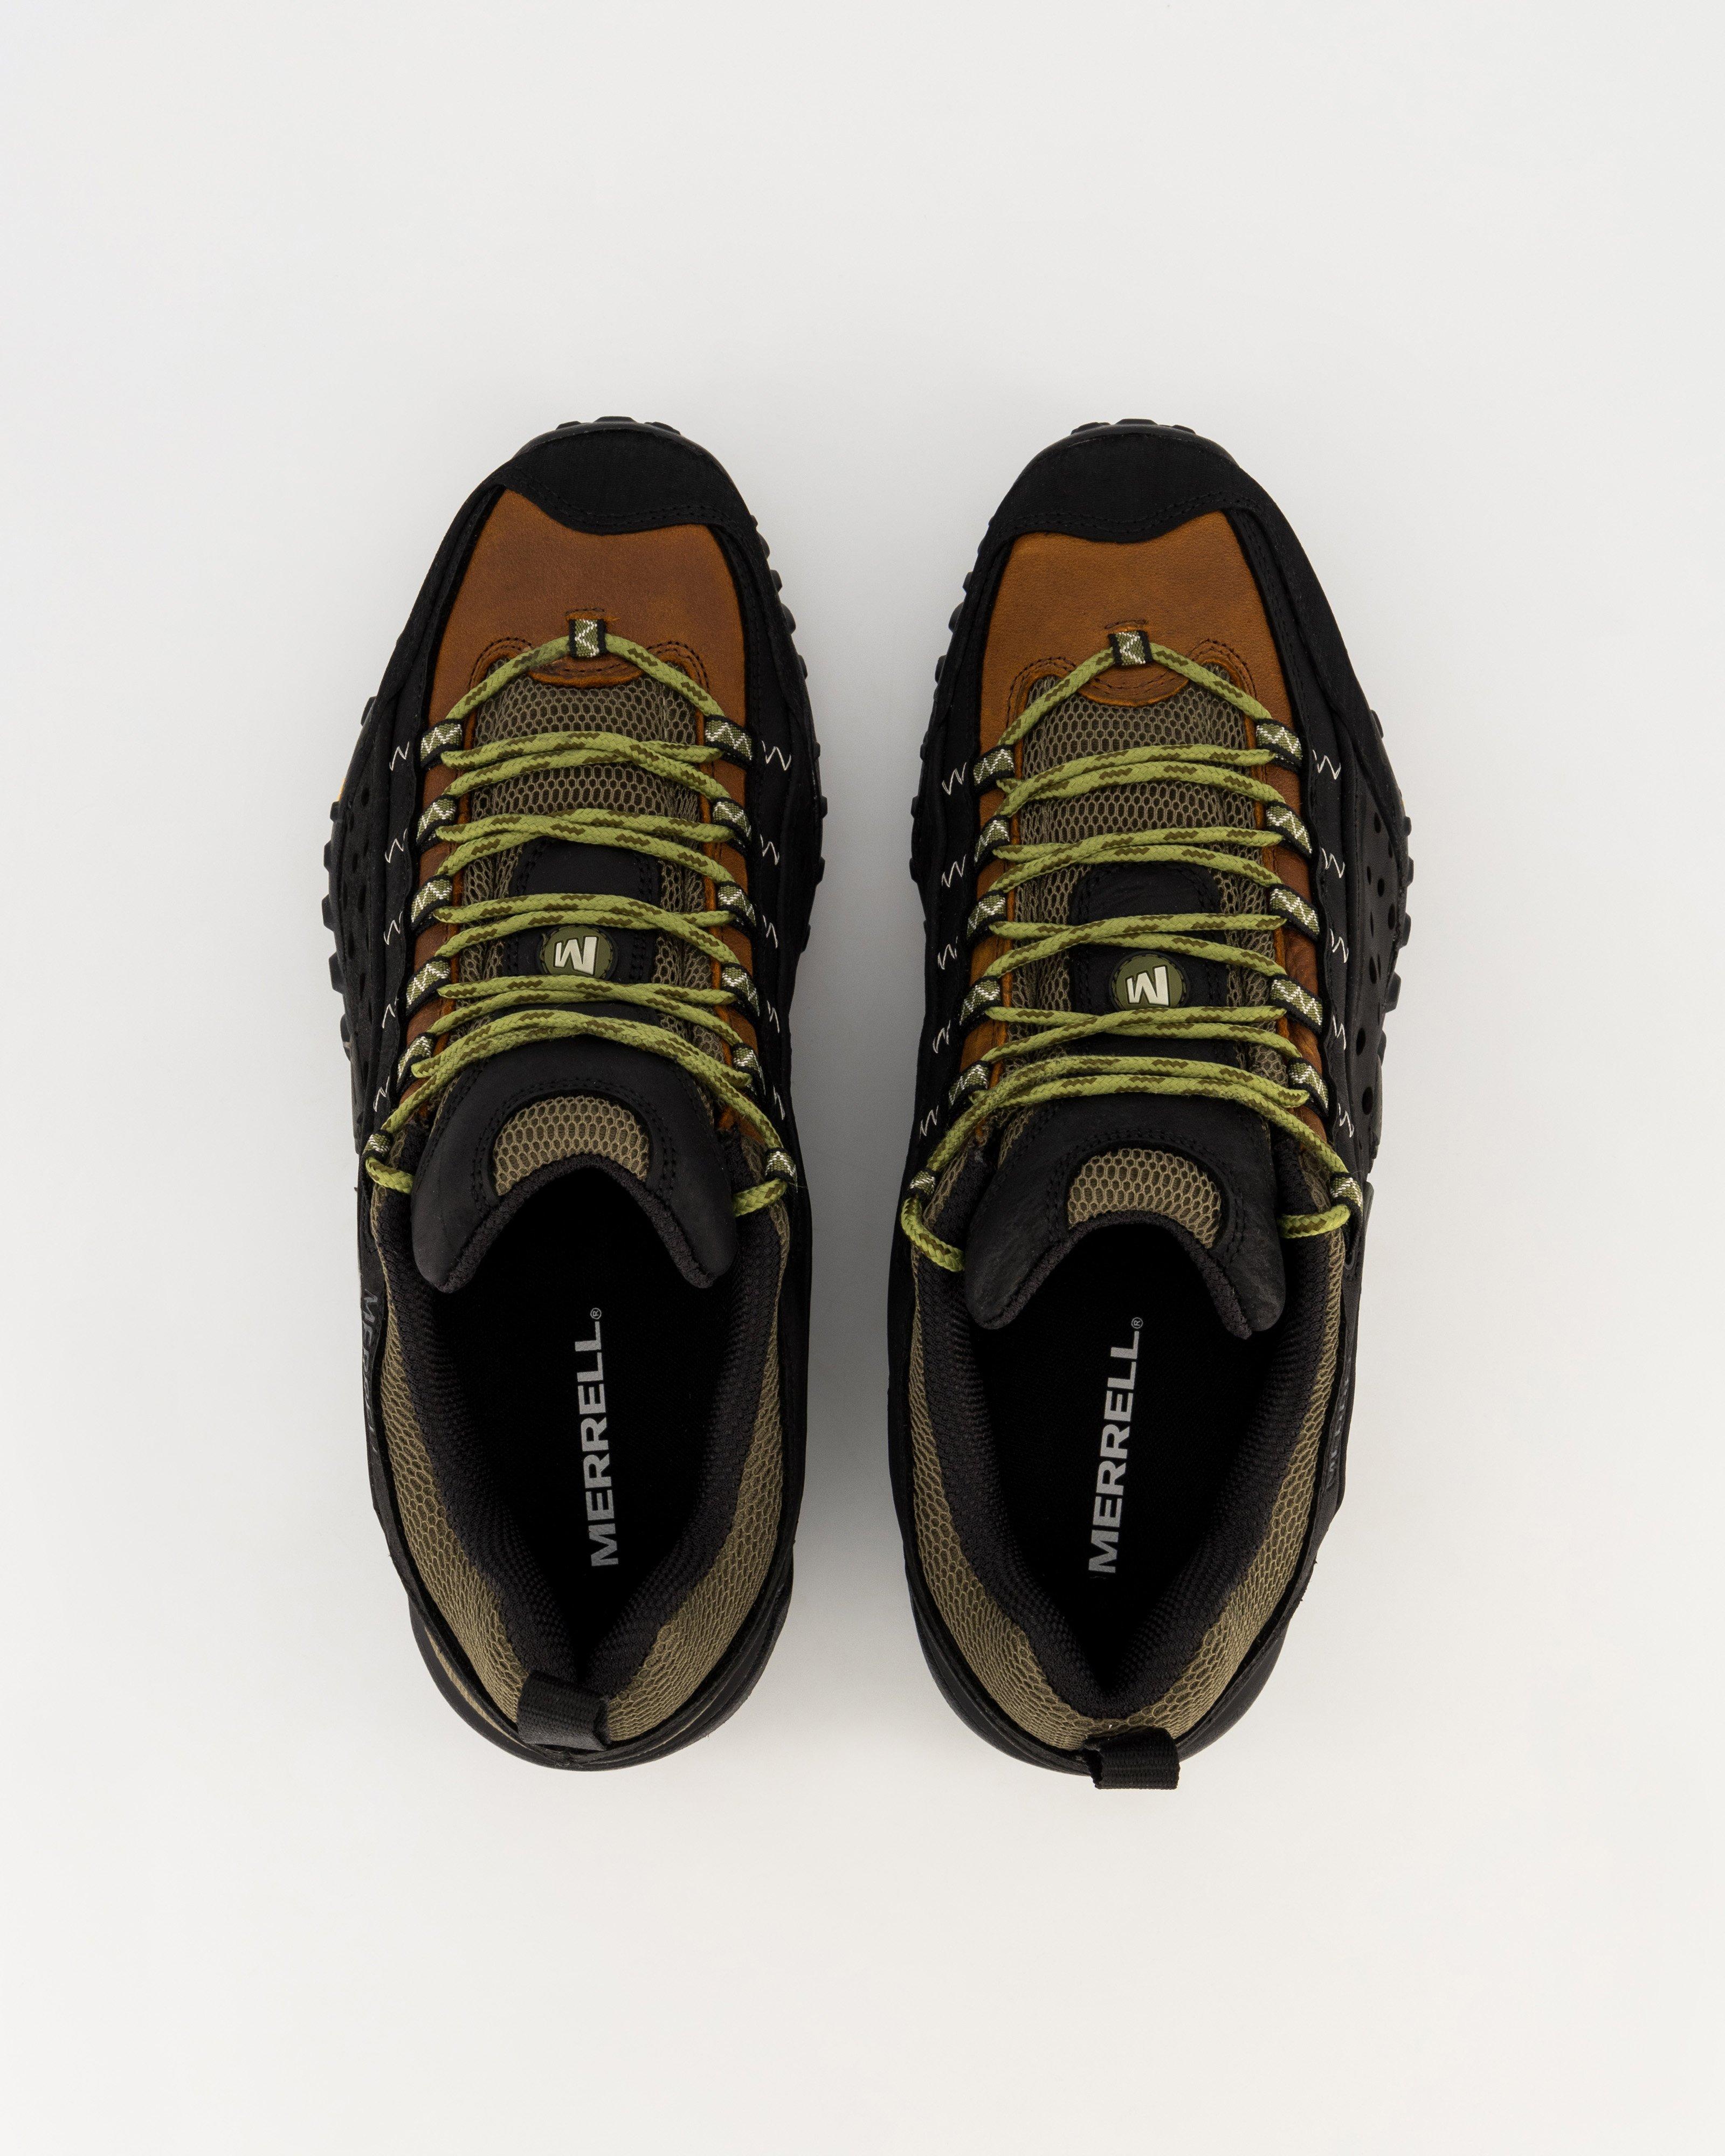 Merrell Men's Intercept Hiking Shoes